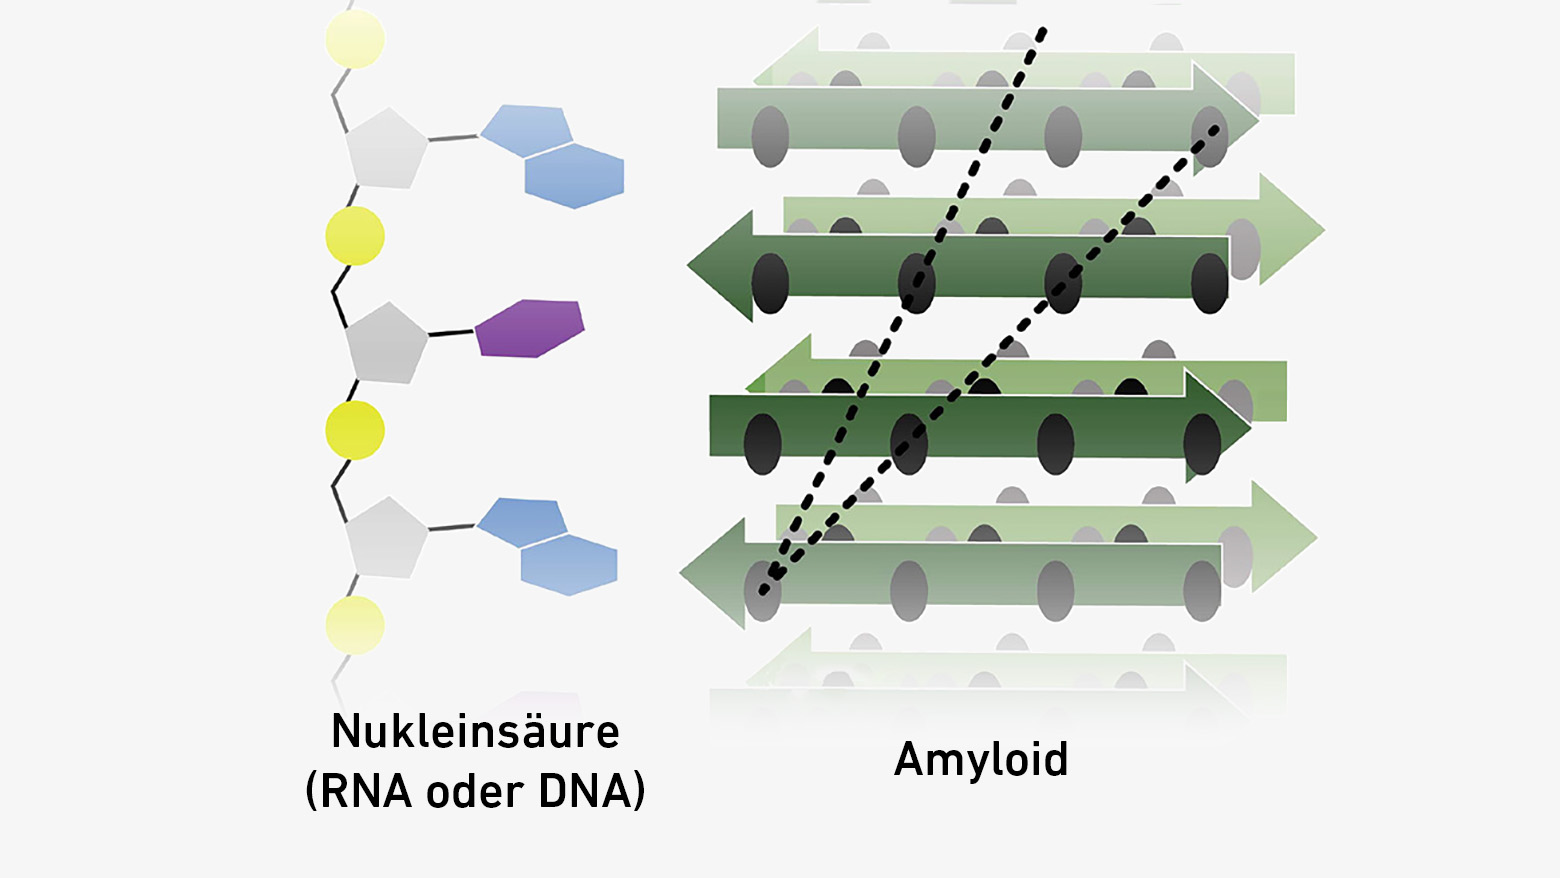 Darstellung Nukleinsäure (links) und Darstellung Amyloid (rechts)